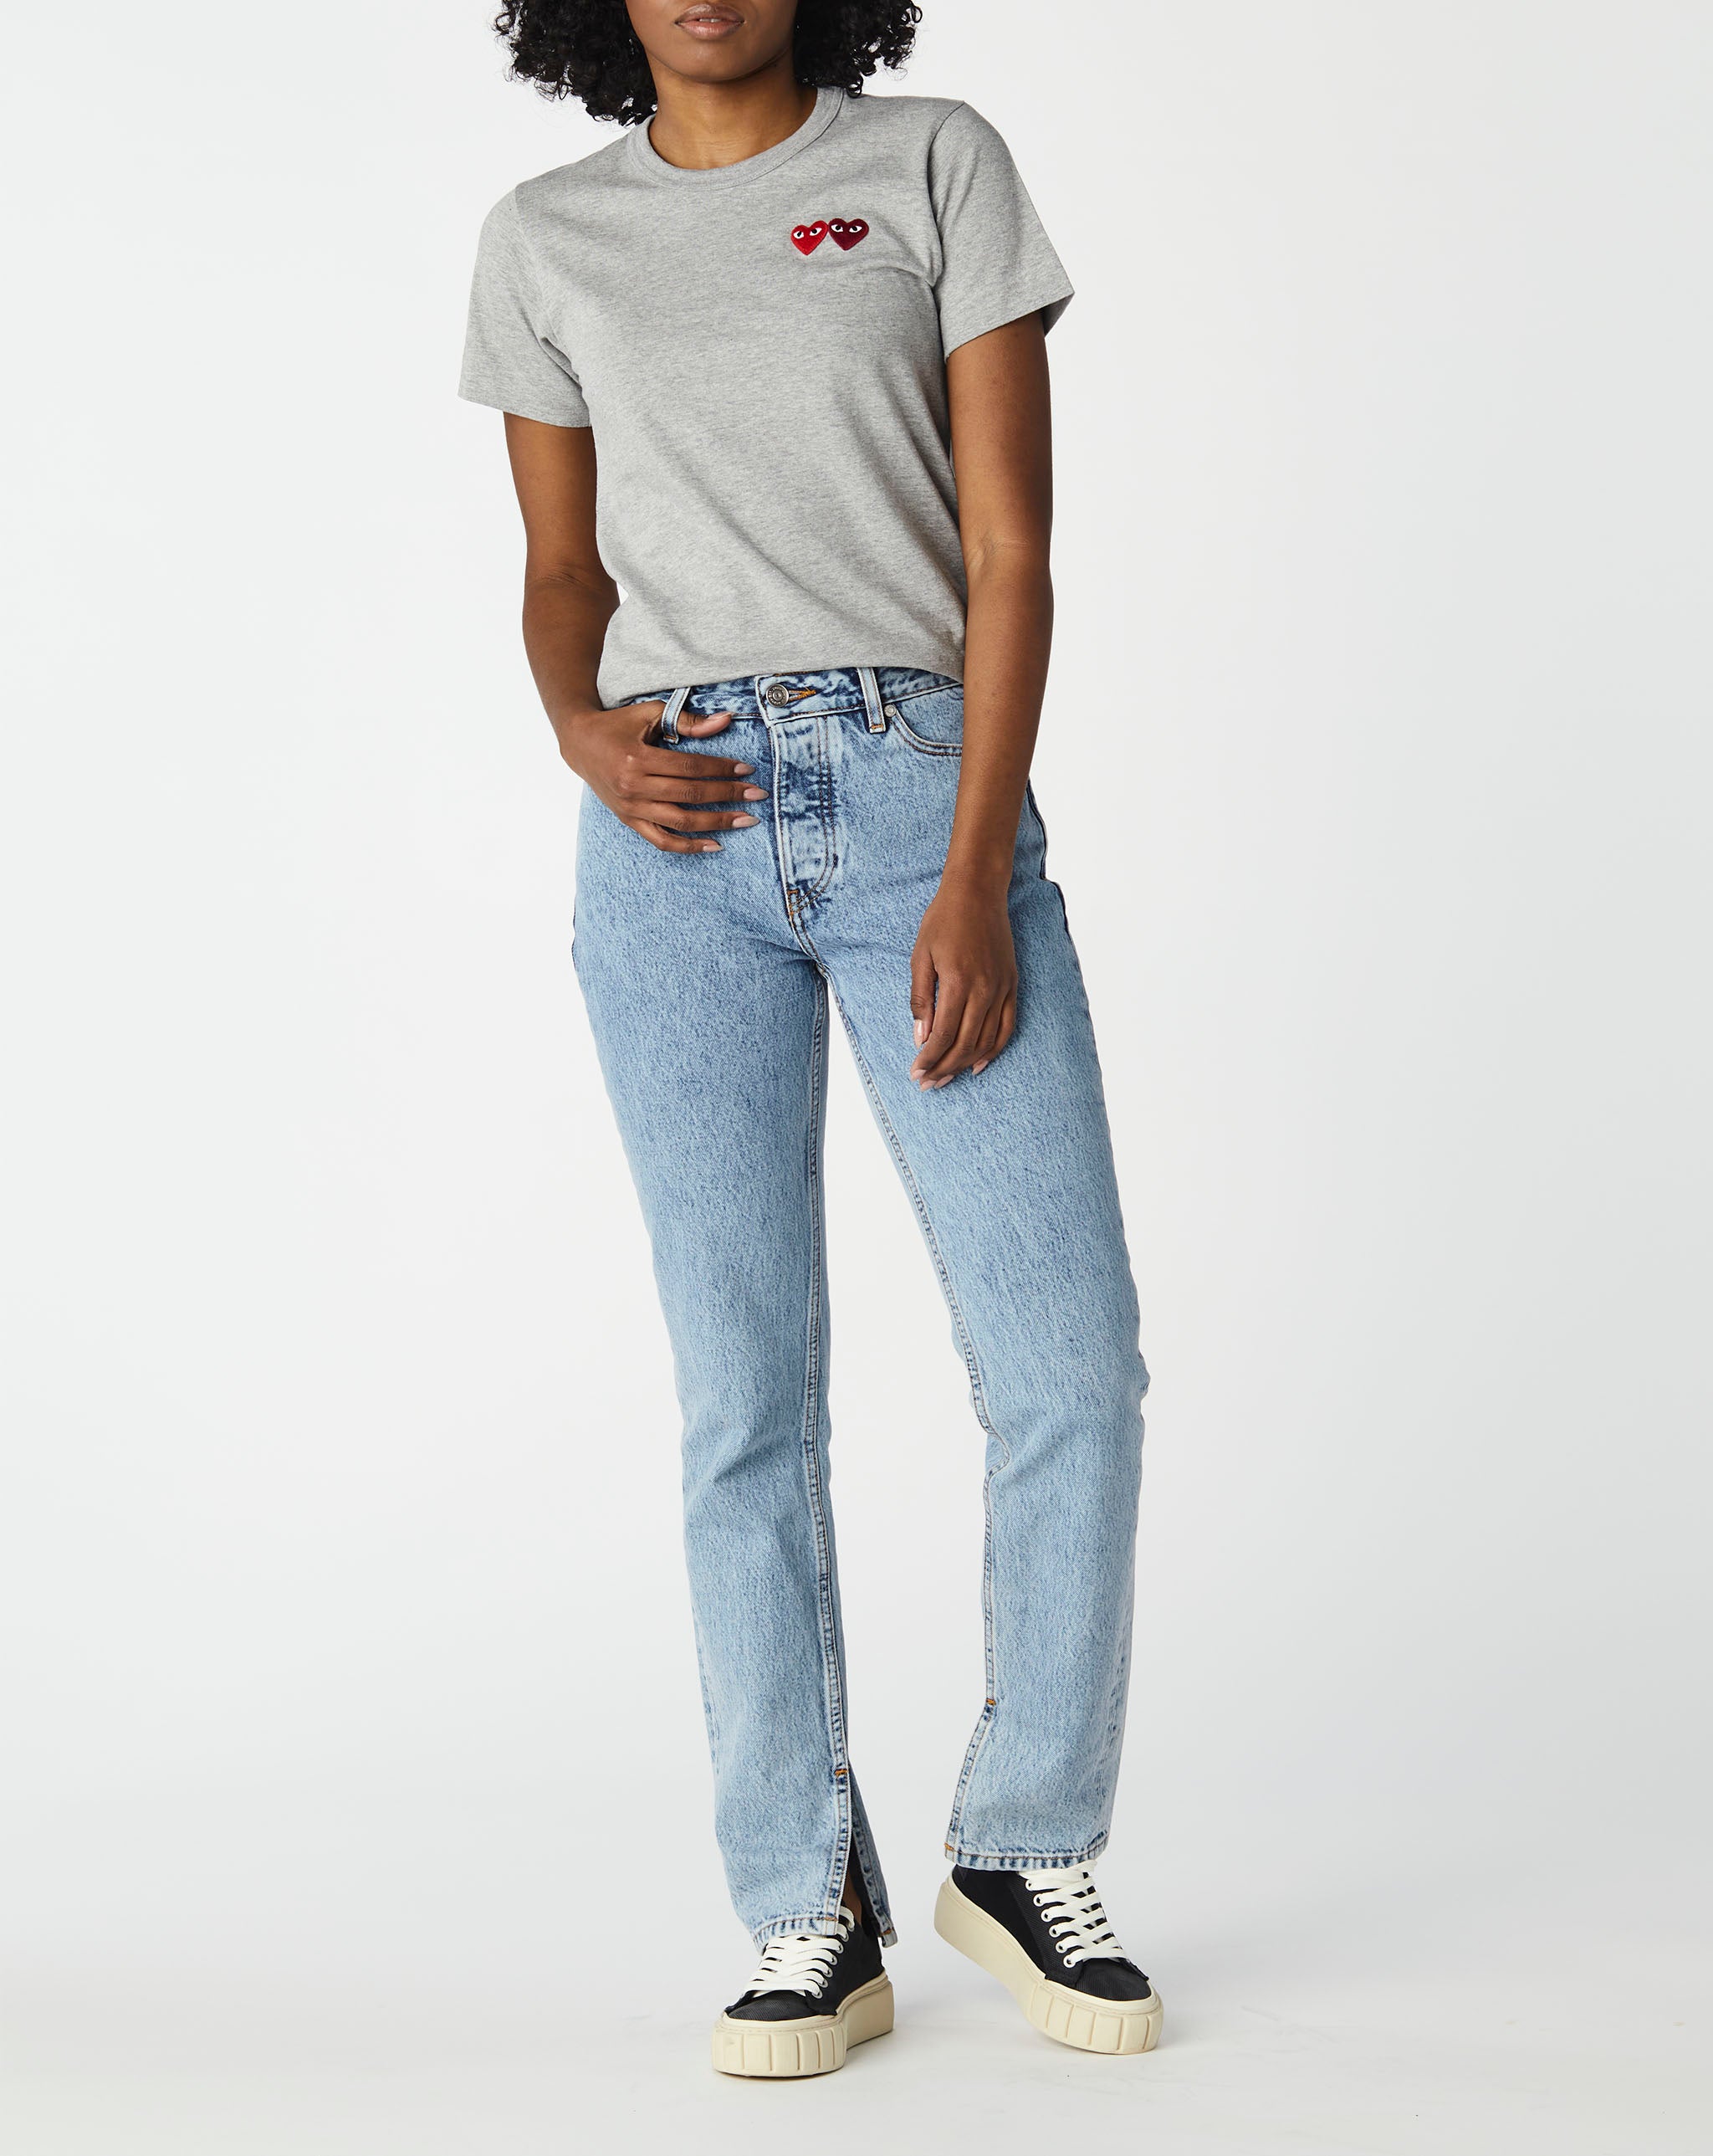 Comme des Garcons PLAY Women's Double Heart T-Shirt  - Cheap Cerbe Jordan outlet